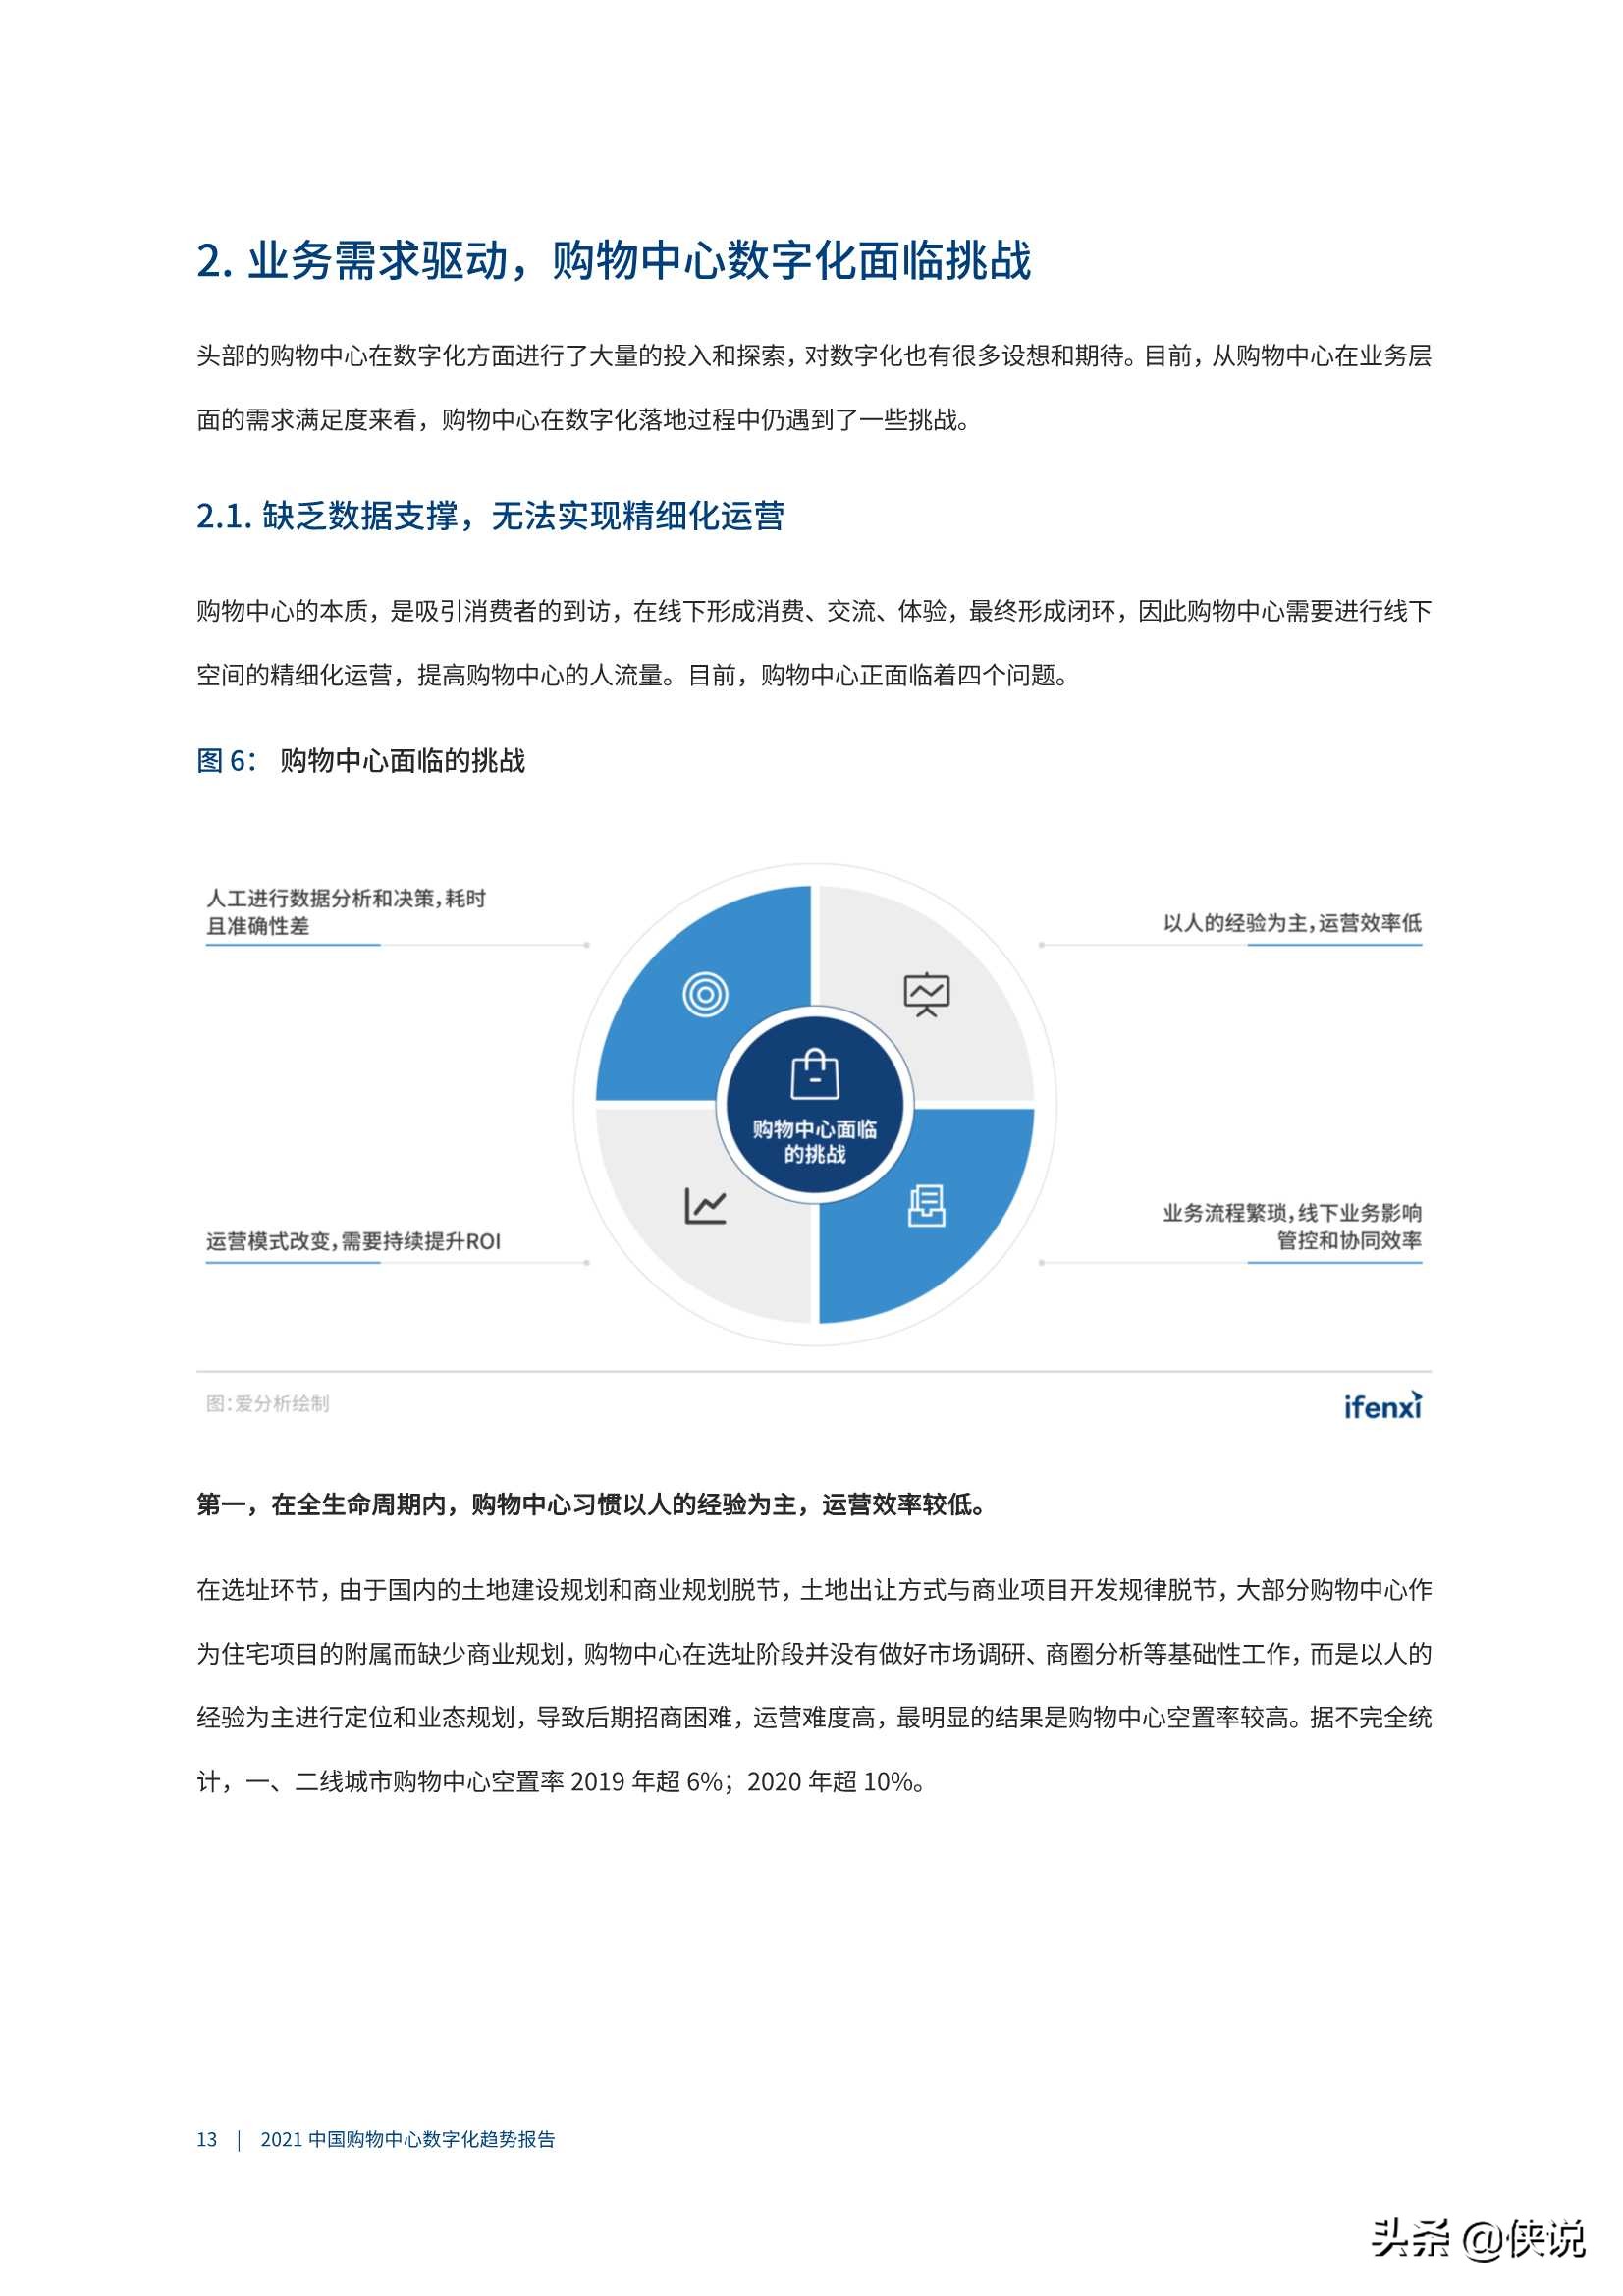 爱分析《2021中国购物中心数字化趋势报告》